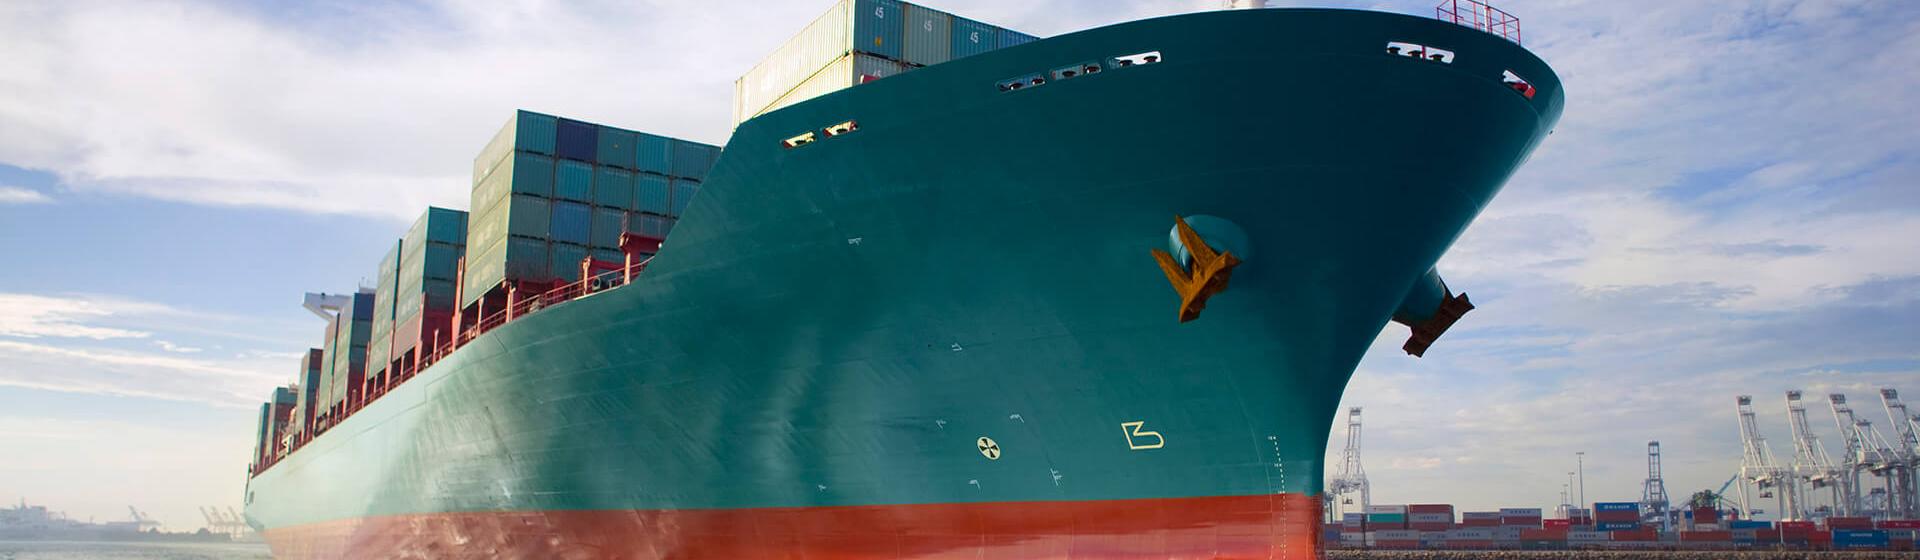 een containerschip dat zich door een haven beweegt met kranen op de achtergrond, gezien vanaf zeeniveau